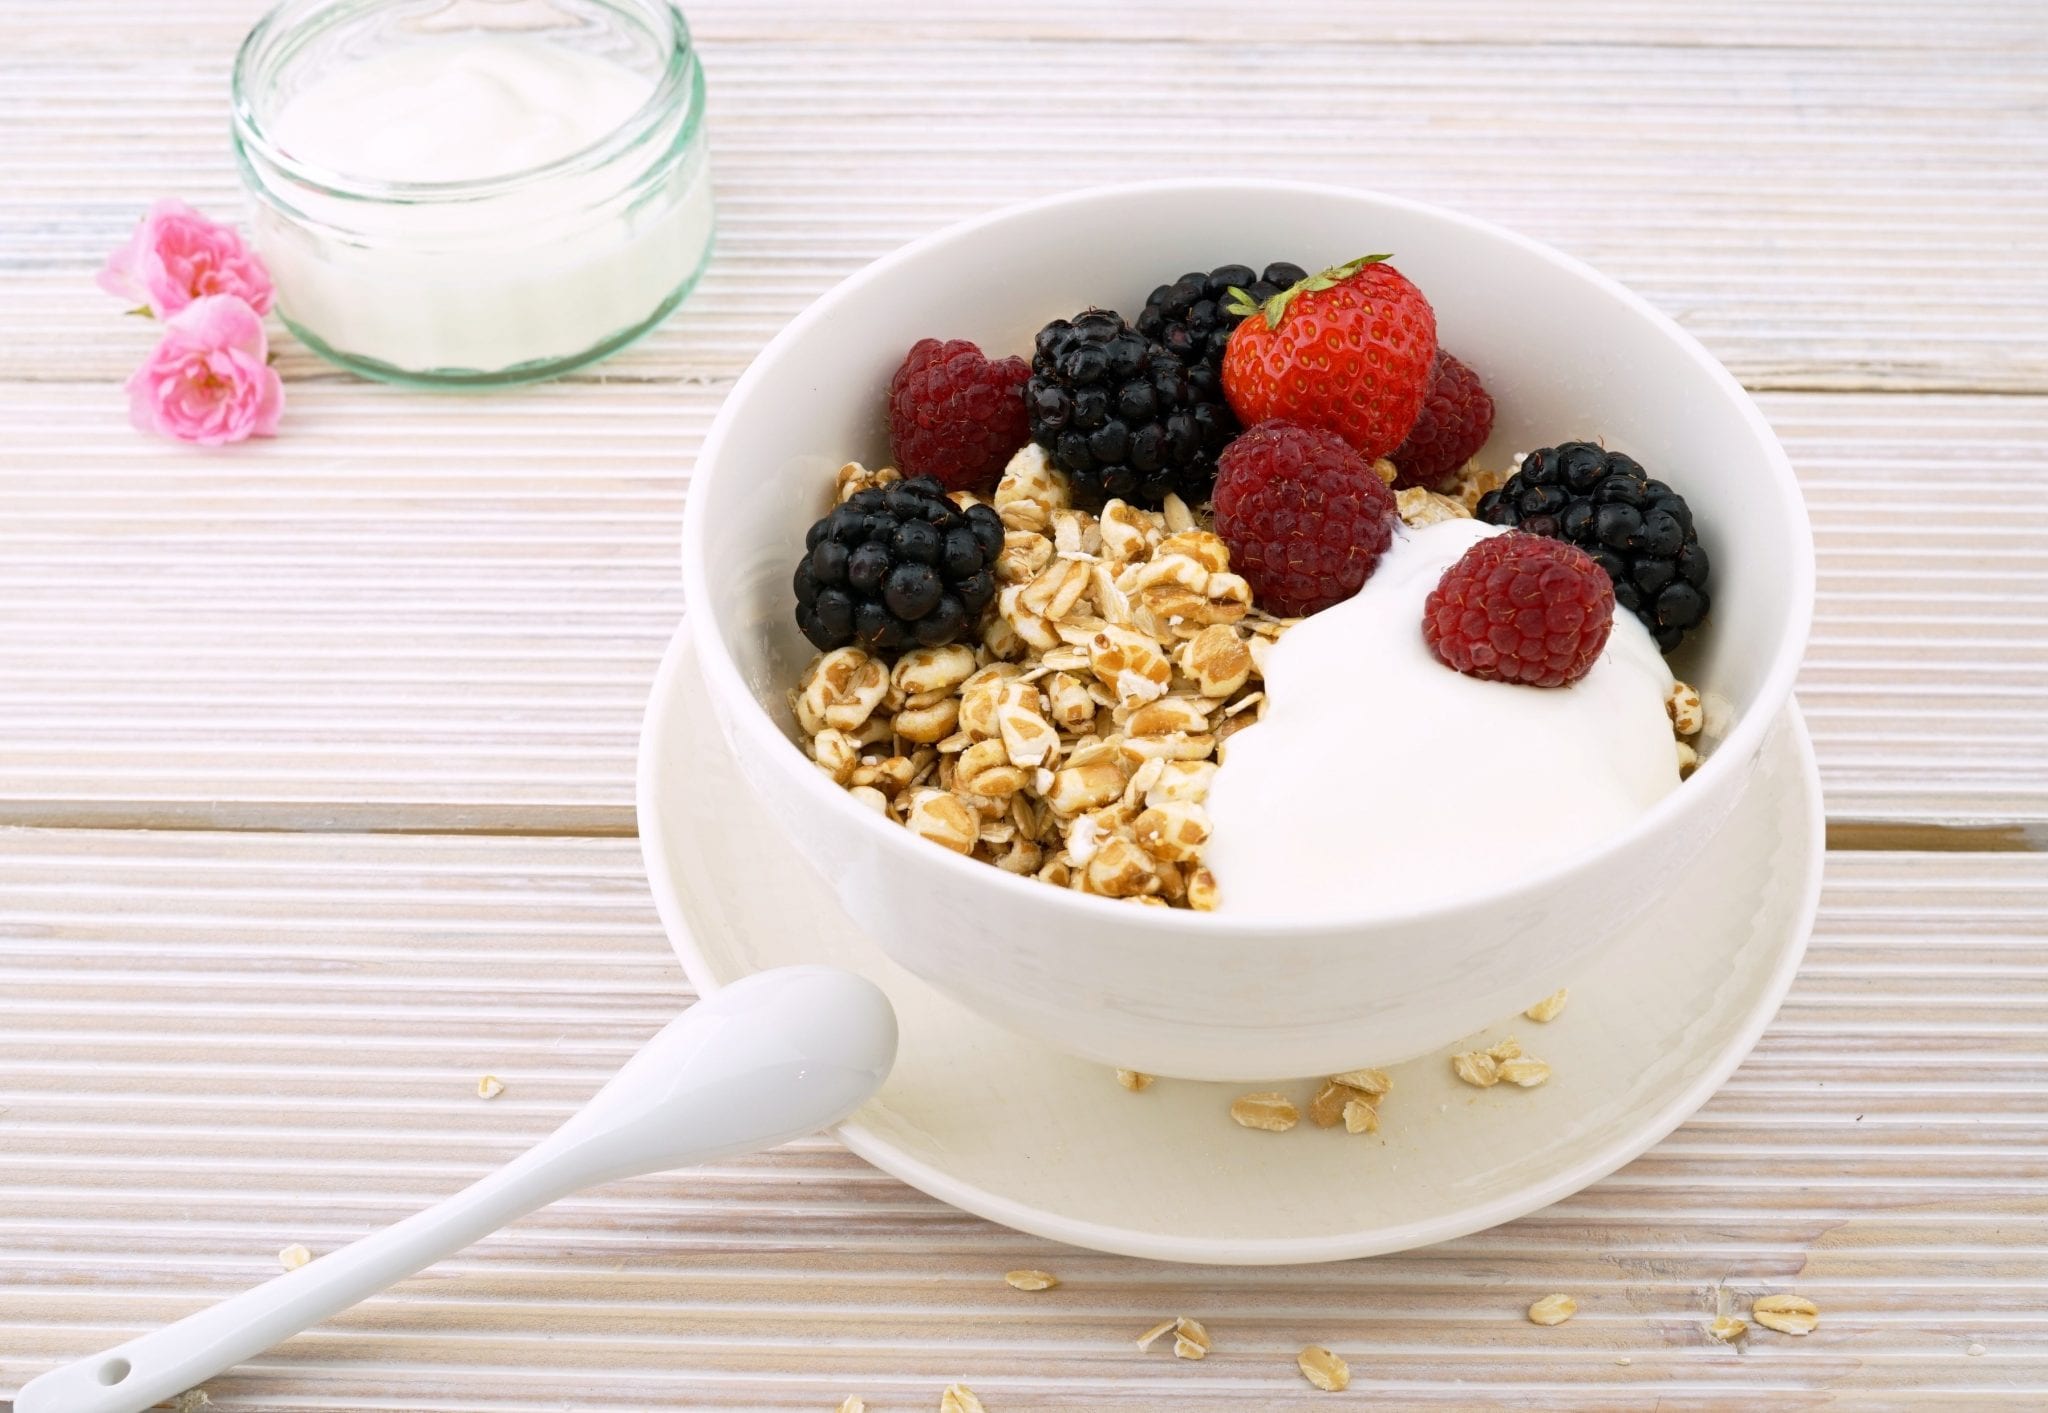 Yogurt and berries with granola